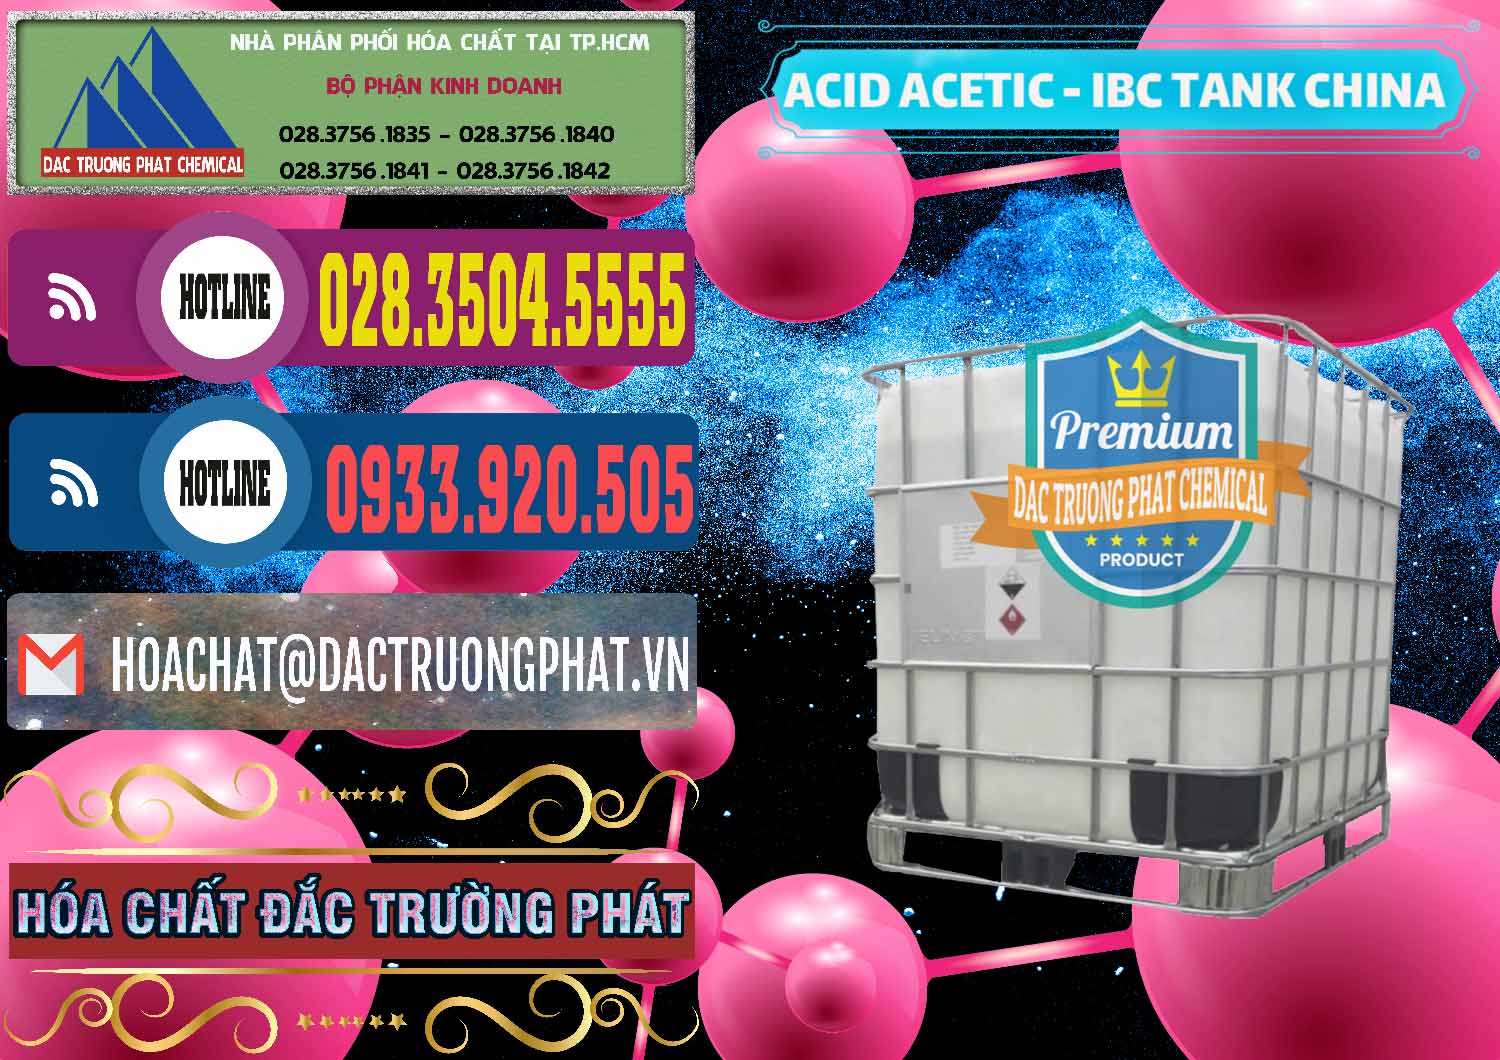 Công ty chuyên bán _ cung cấp Acetic Acid – Axit Acetic Tank Bồn IBC Trung Quốc China - 0443 - Công ty cung cấp và bán hóa chất tại TP.HCM - muabanhoachat.com.vn